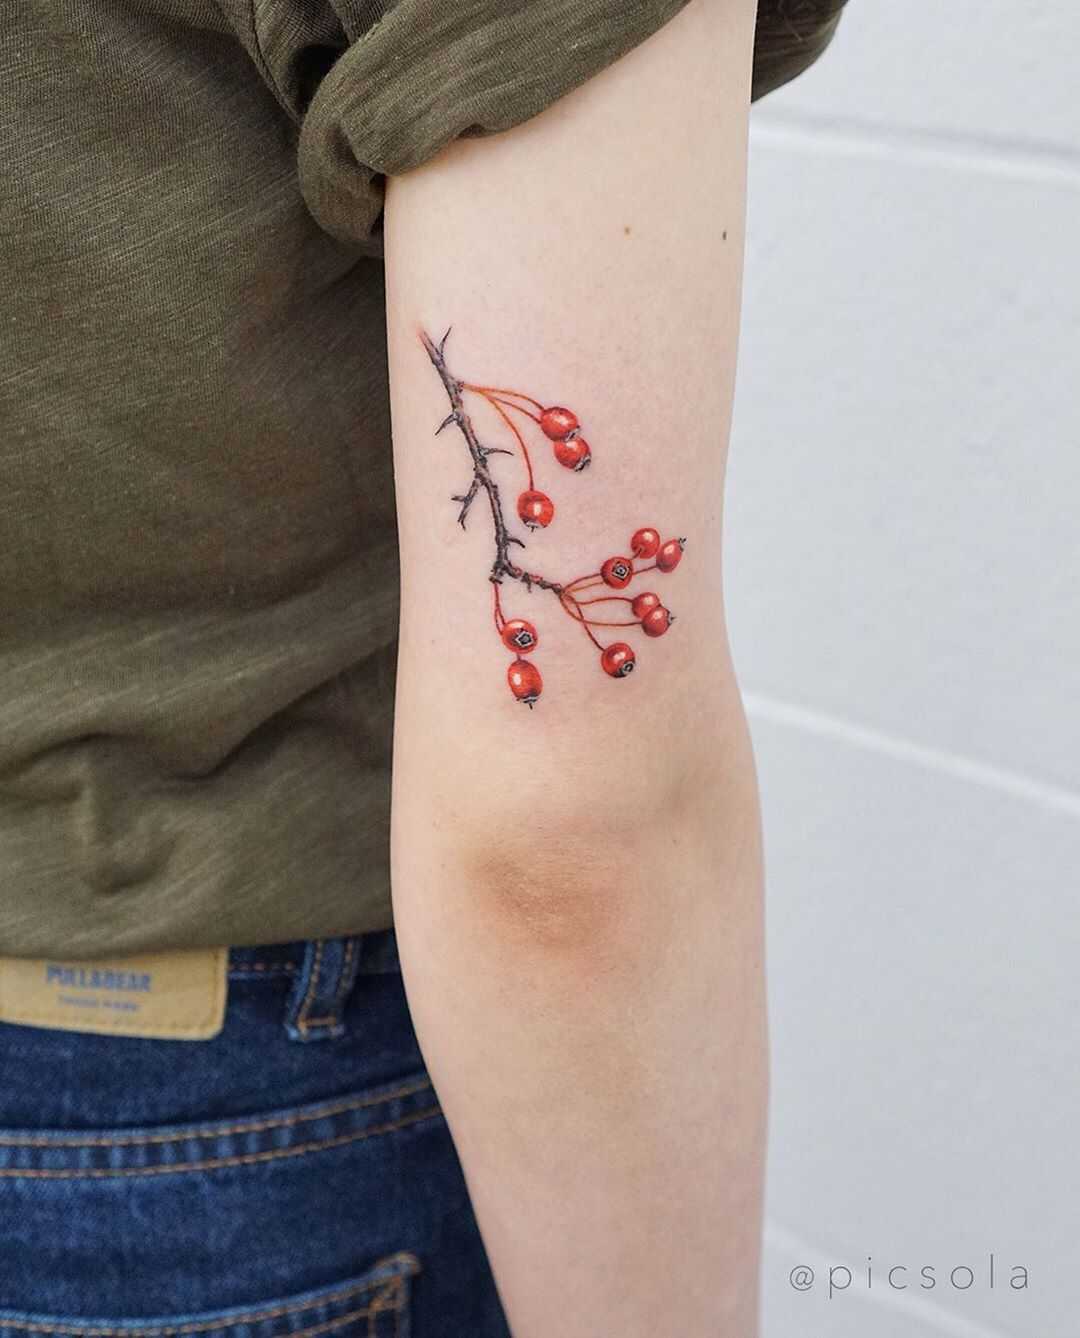 Hawthorn berries tattoo by tattooist picsola - Tattoogrid.net